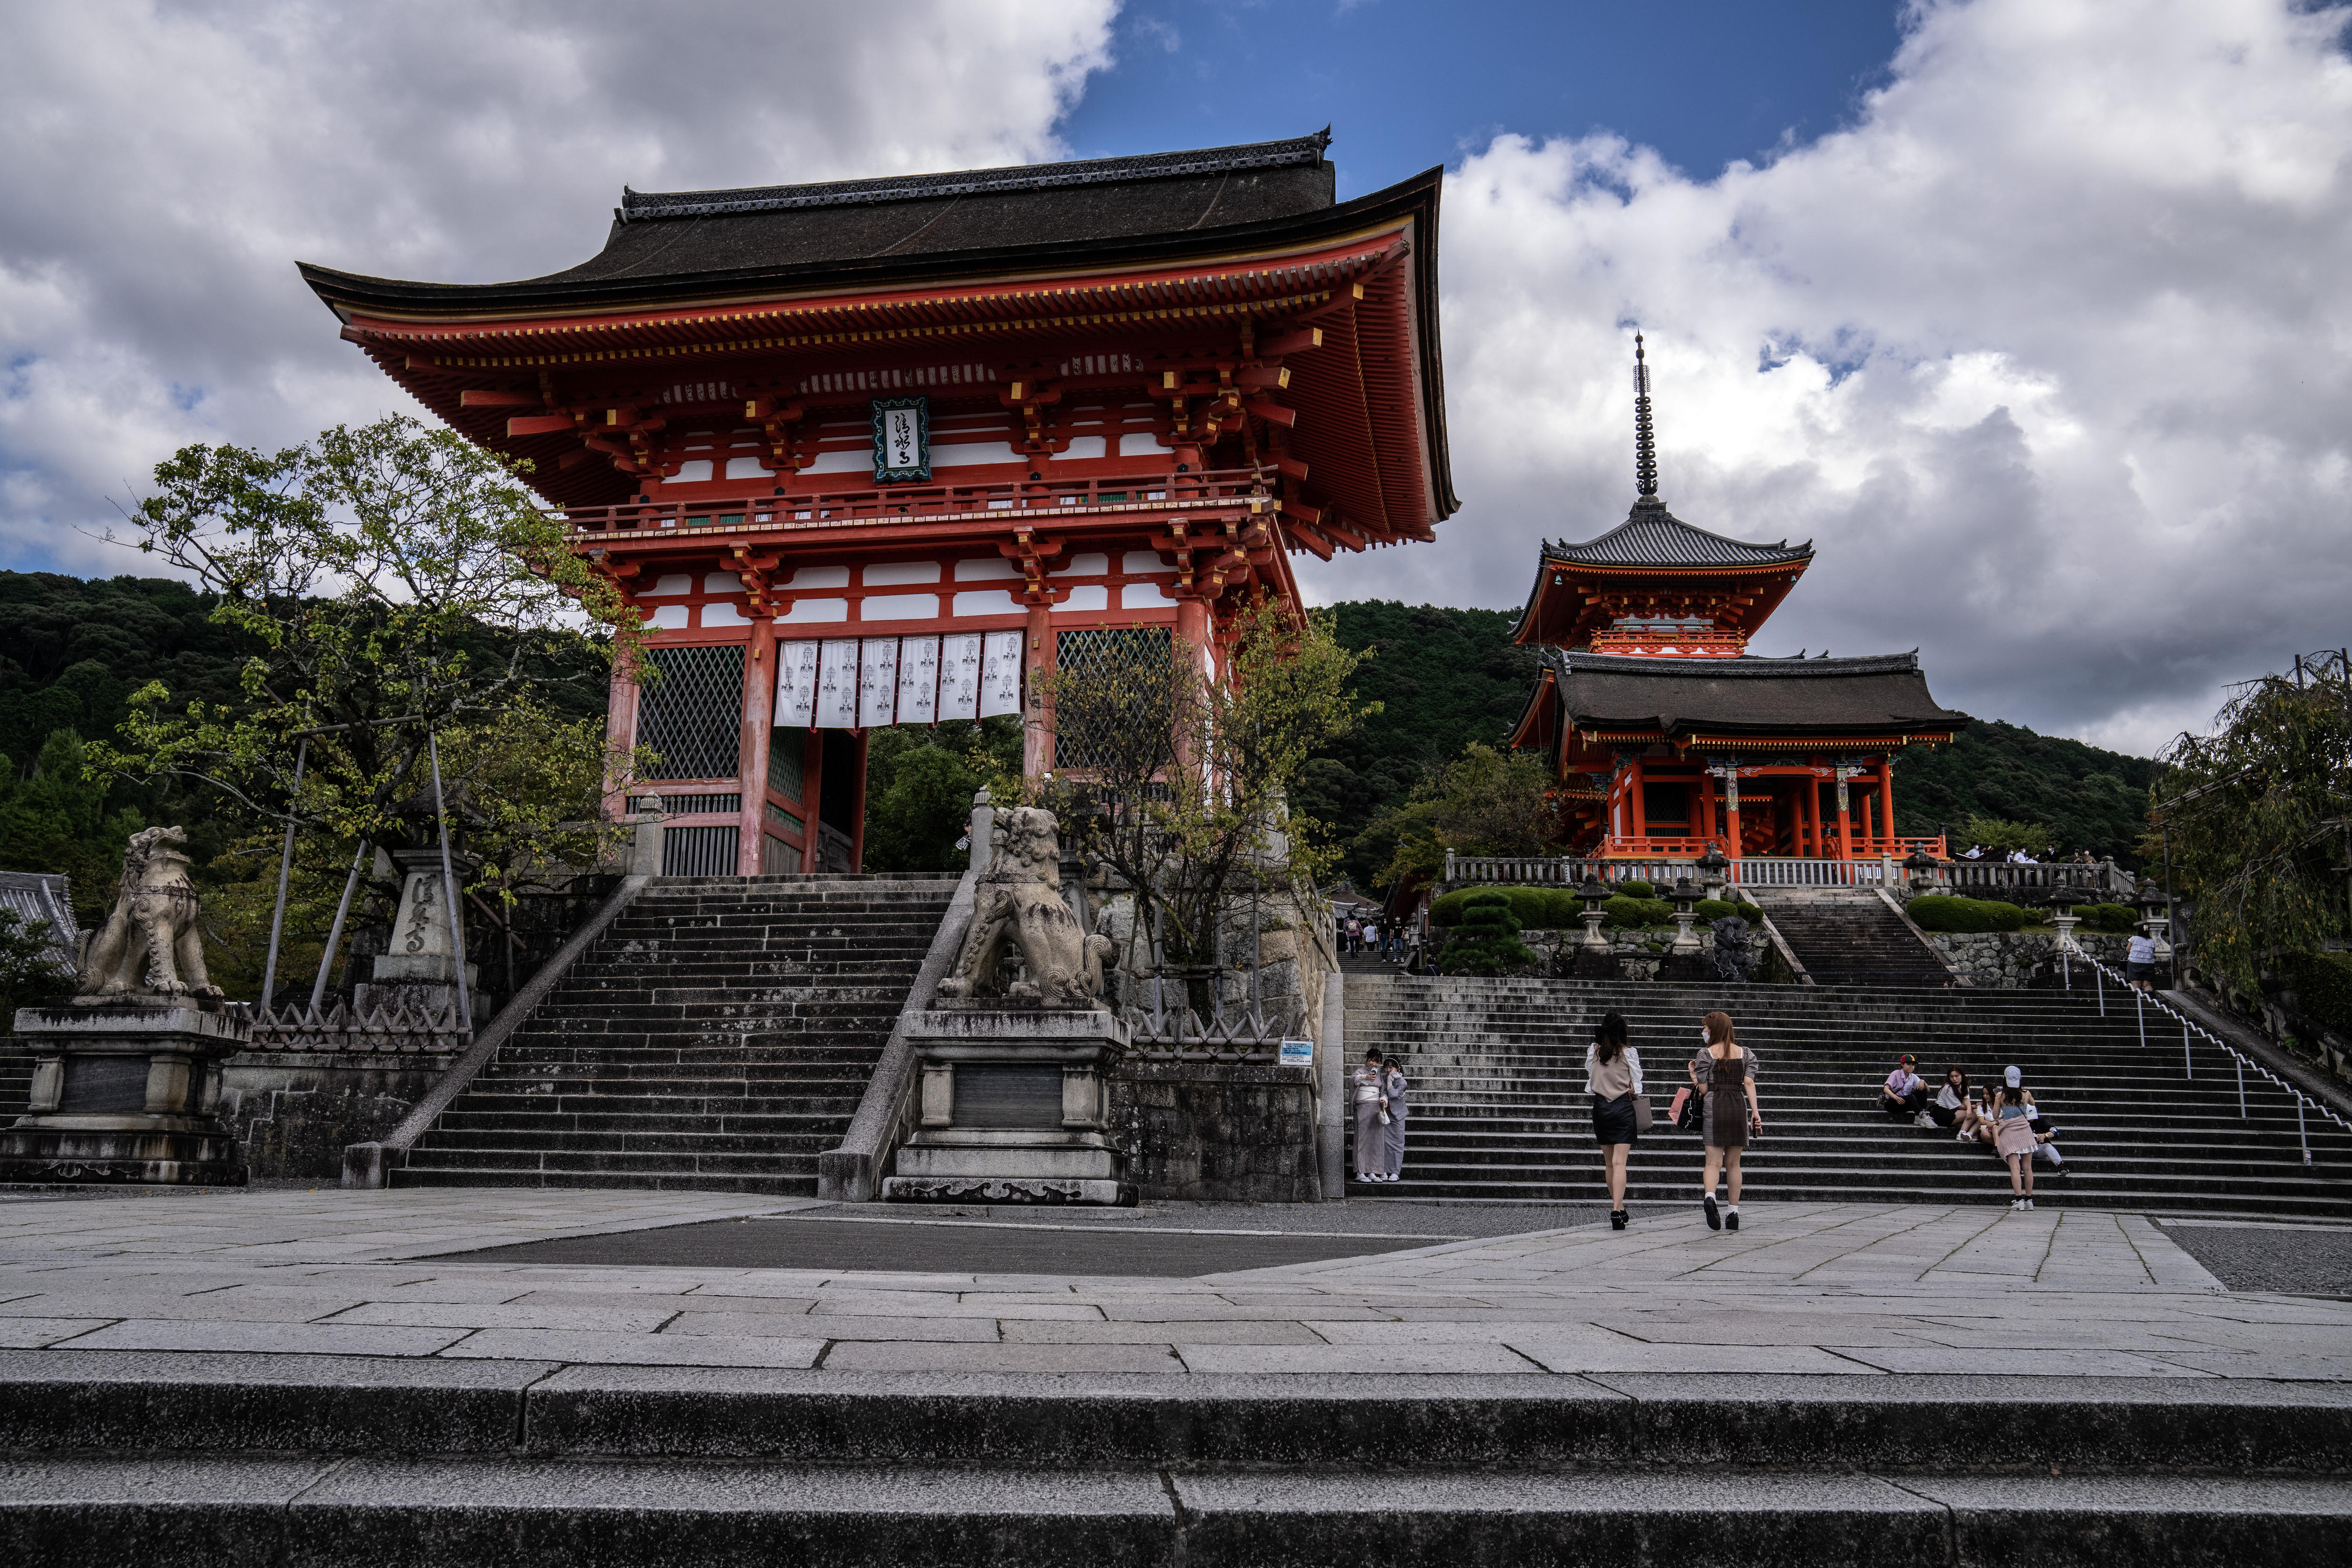 Exploring religion in Japan